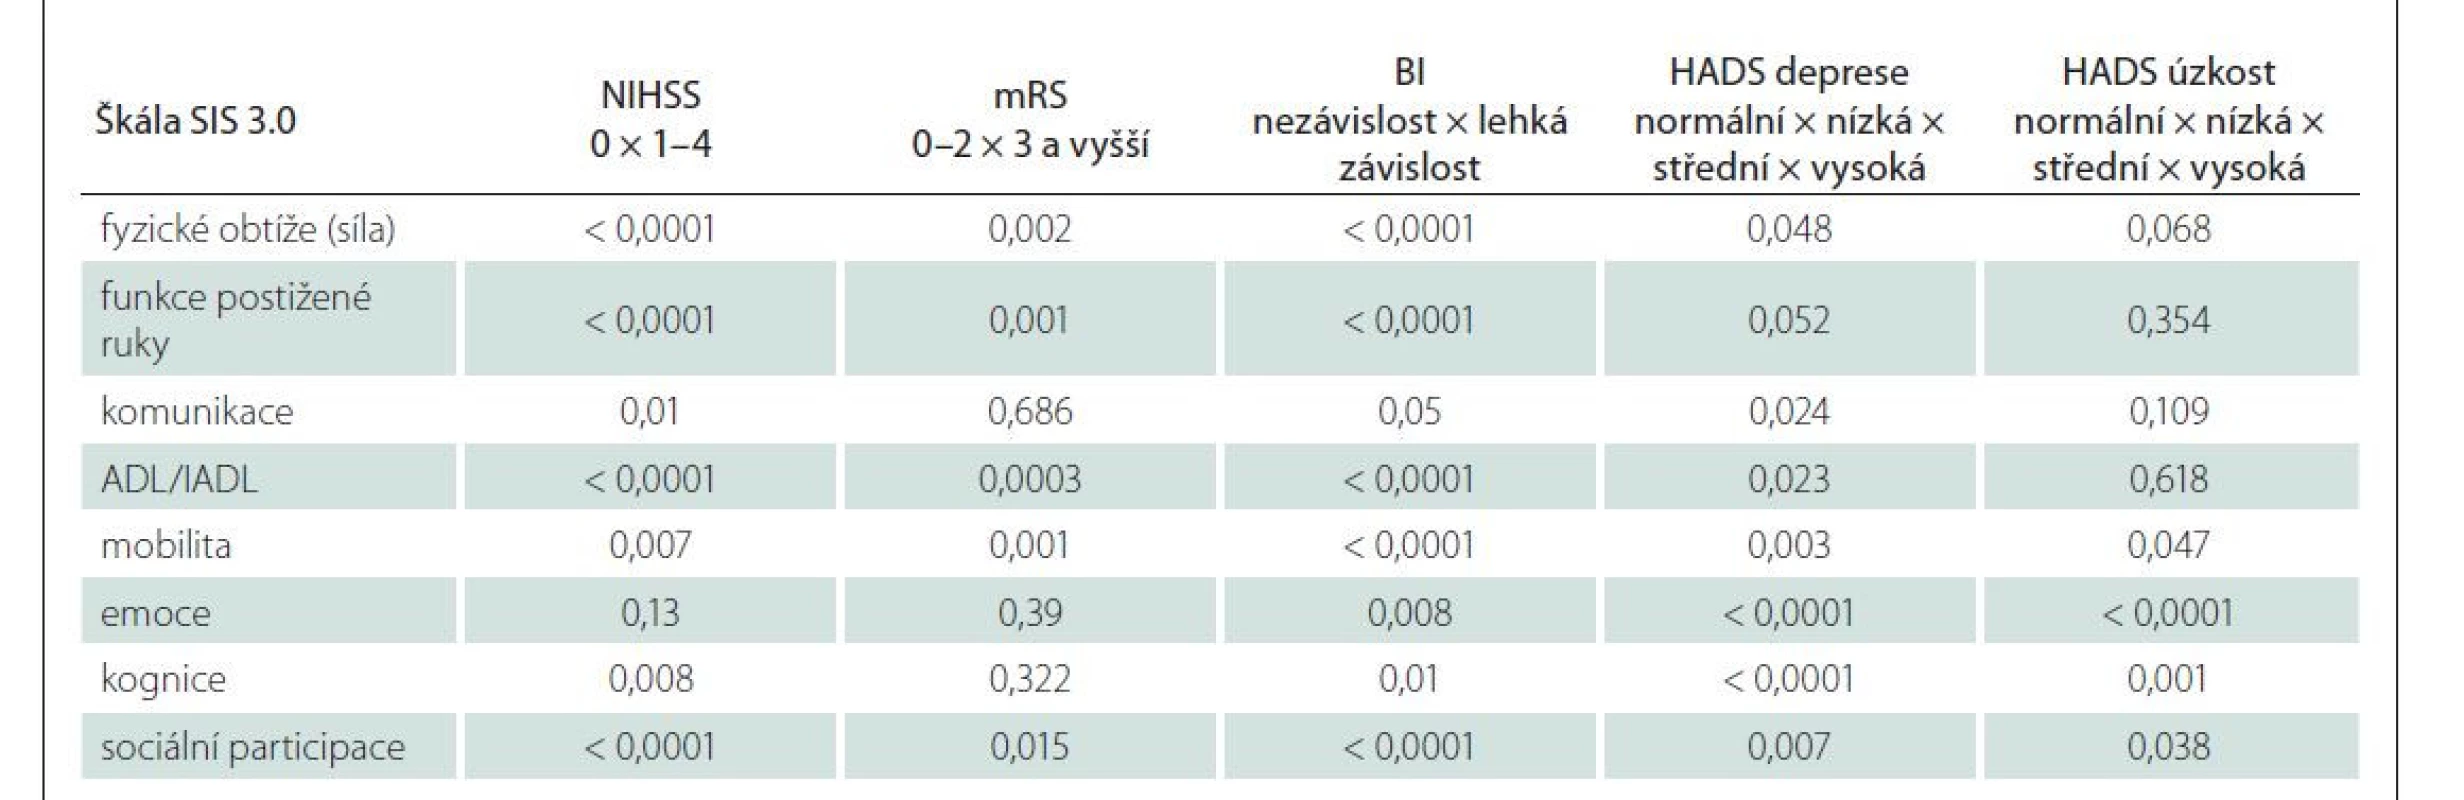 Diskriminační validita SIS 3.0 – rozdíly mezi skupinami. V tabulce jsou uvedeny hodnoty p z neparametrických testů: Kruskal-
Wallis t a Mann-Whitney.